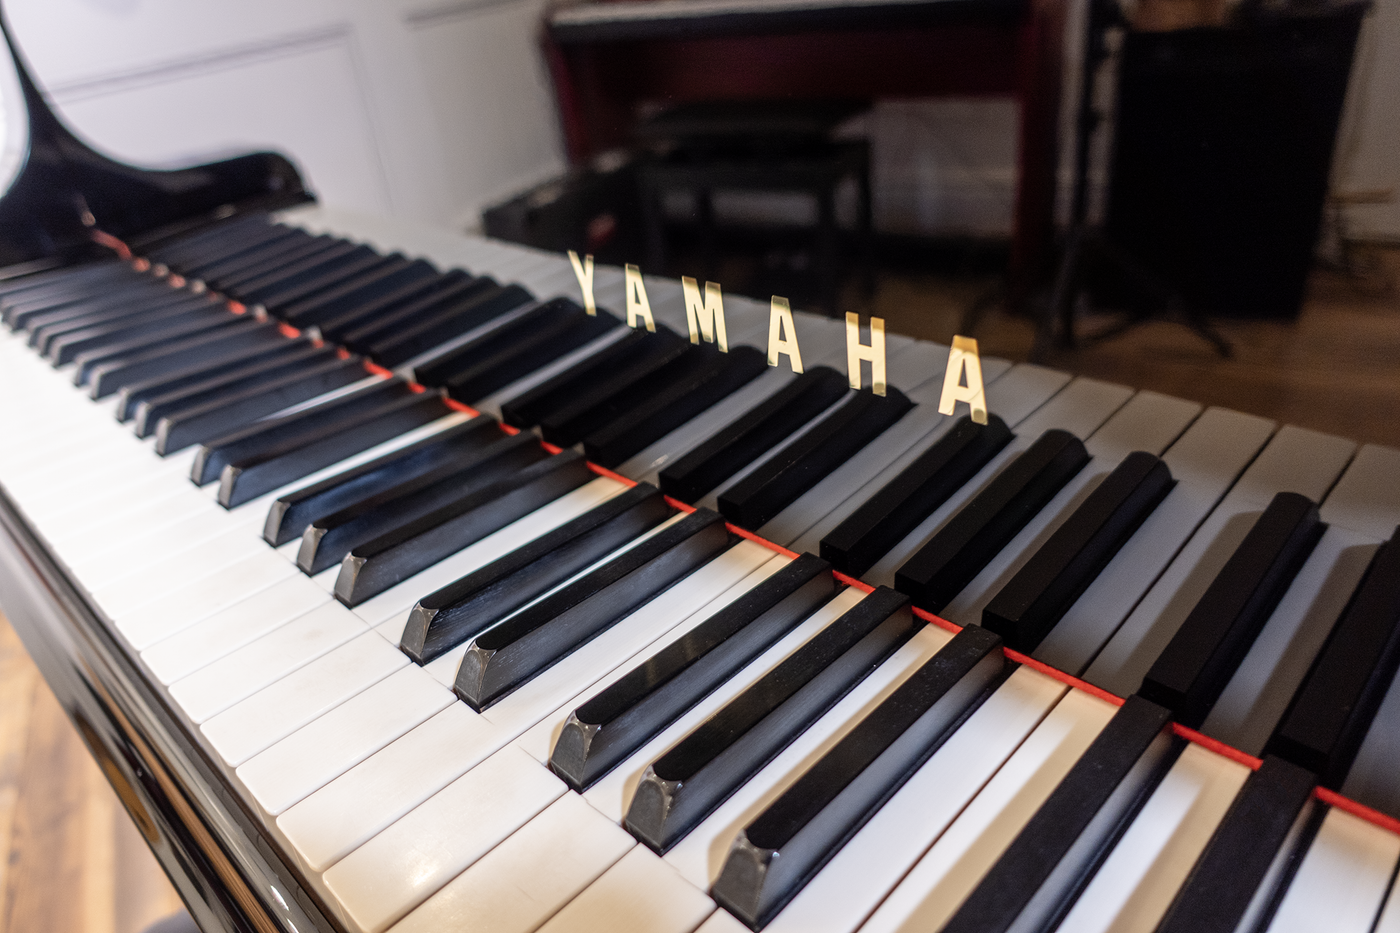 Yamaha C7 Grand Piano